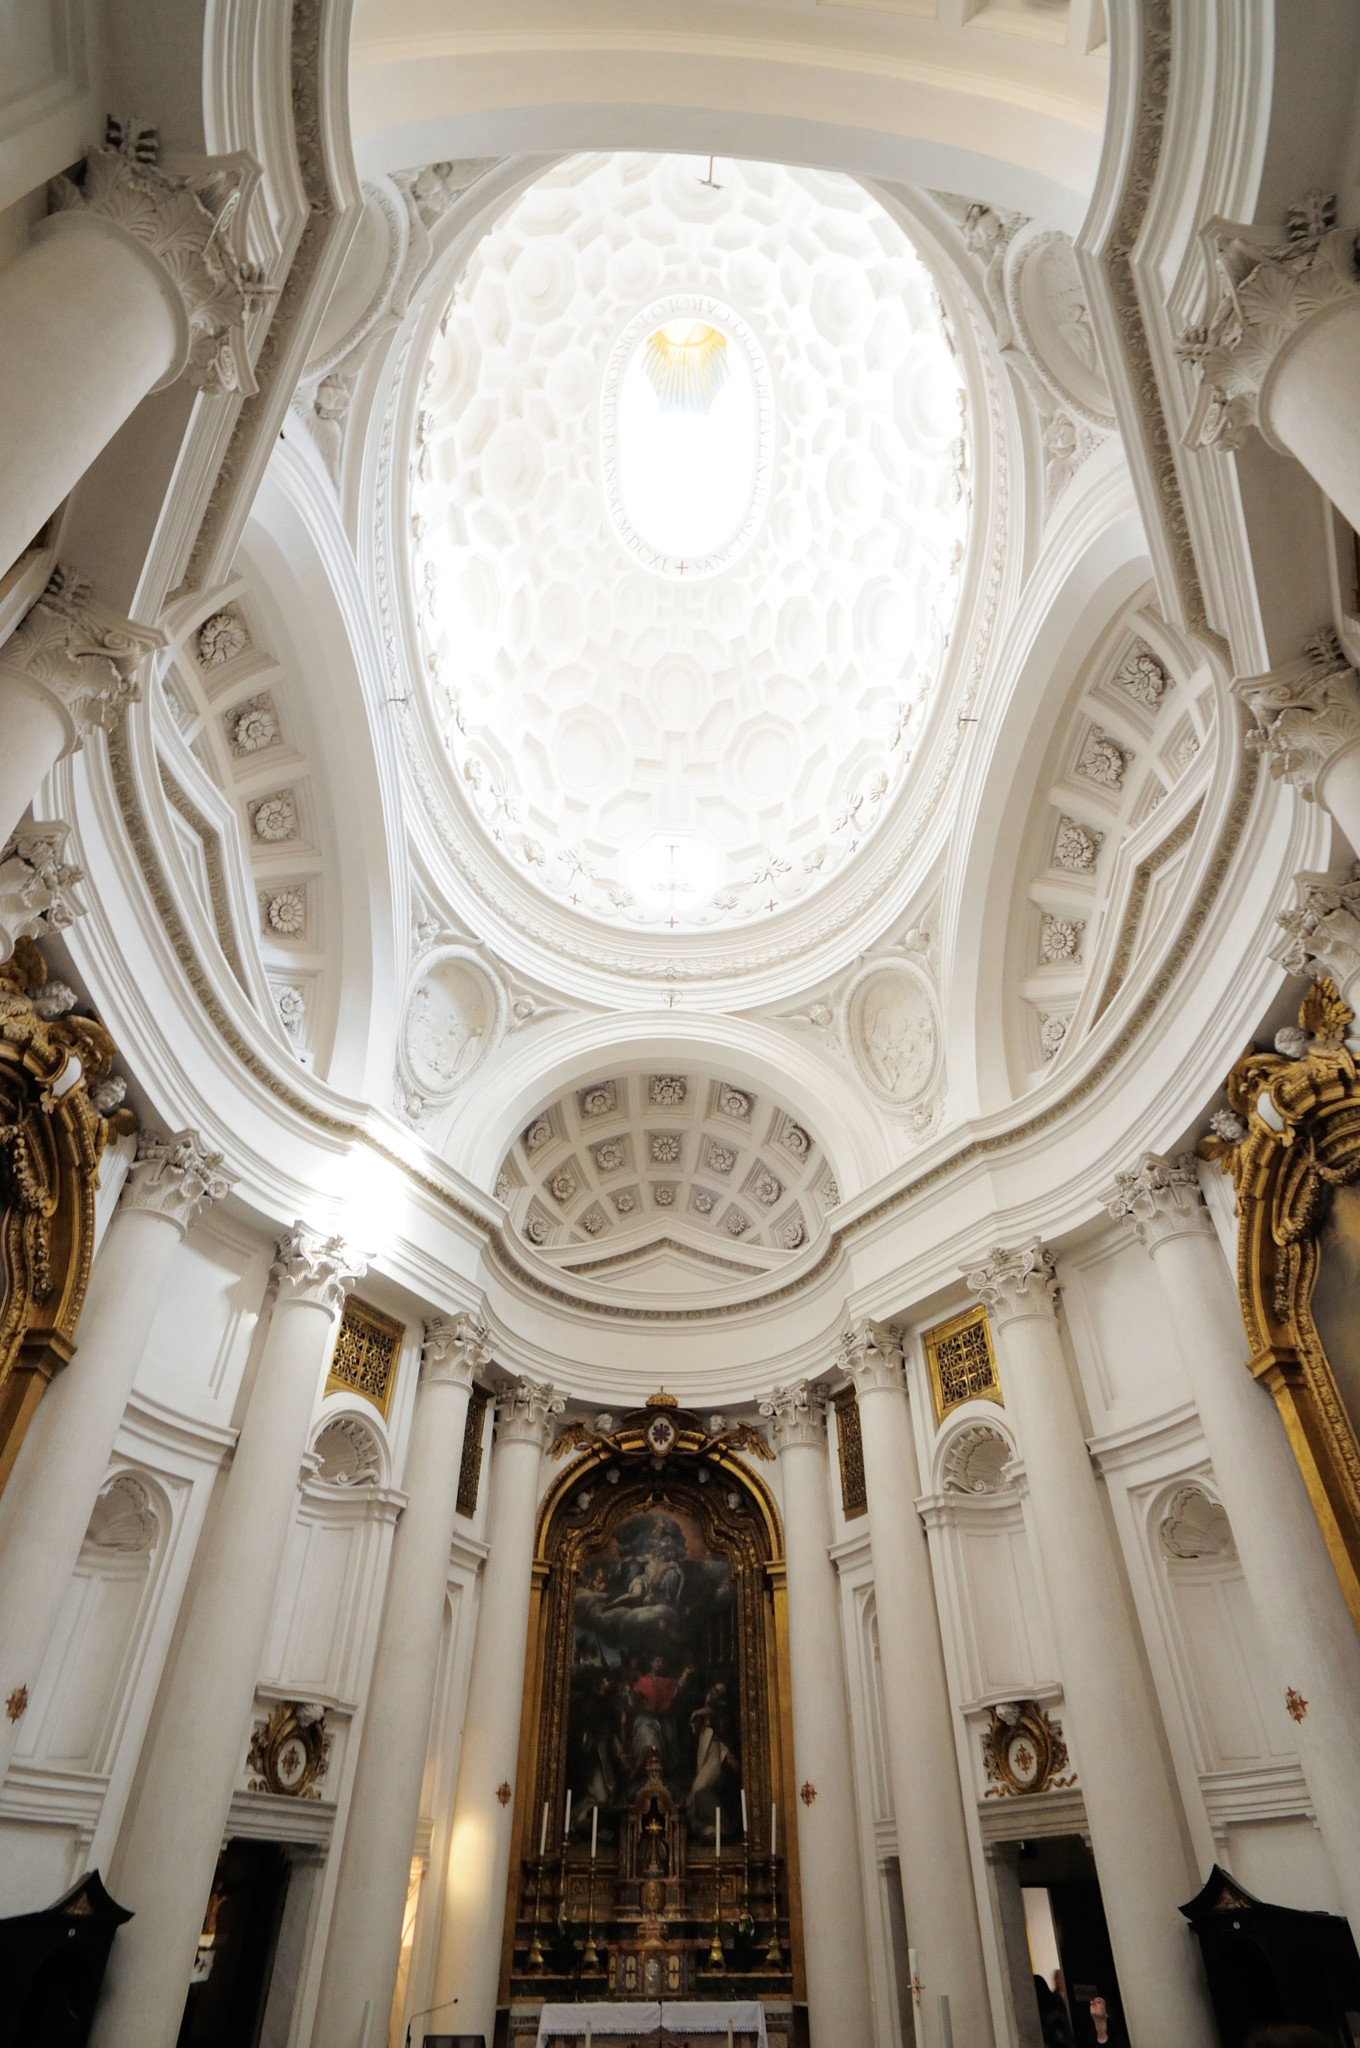 Wnętrze kościoła San Carlo alle Quattro Fontane.